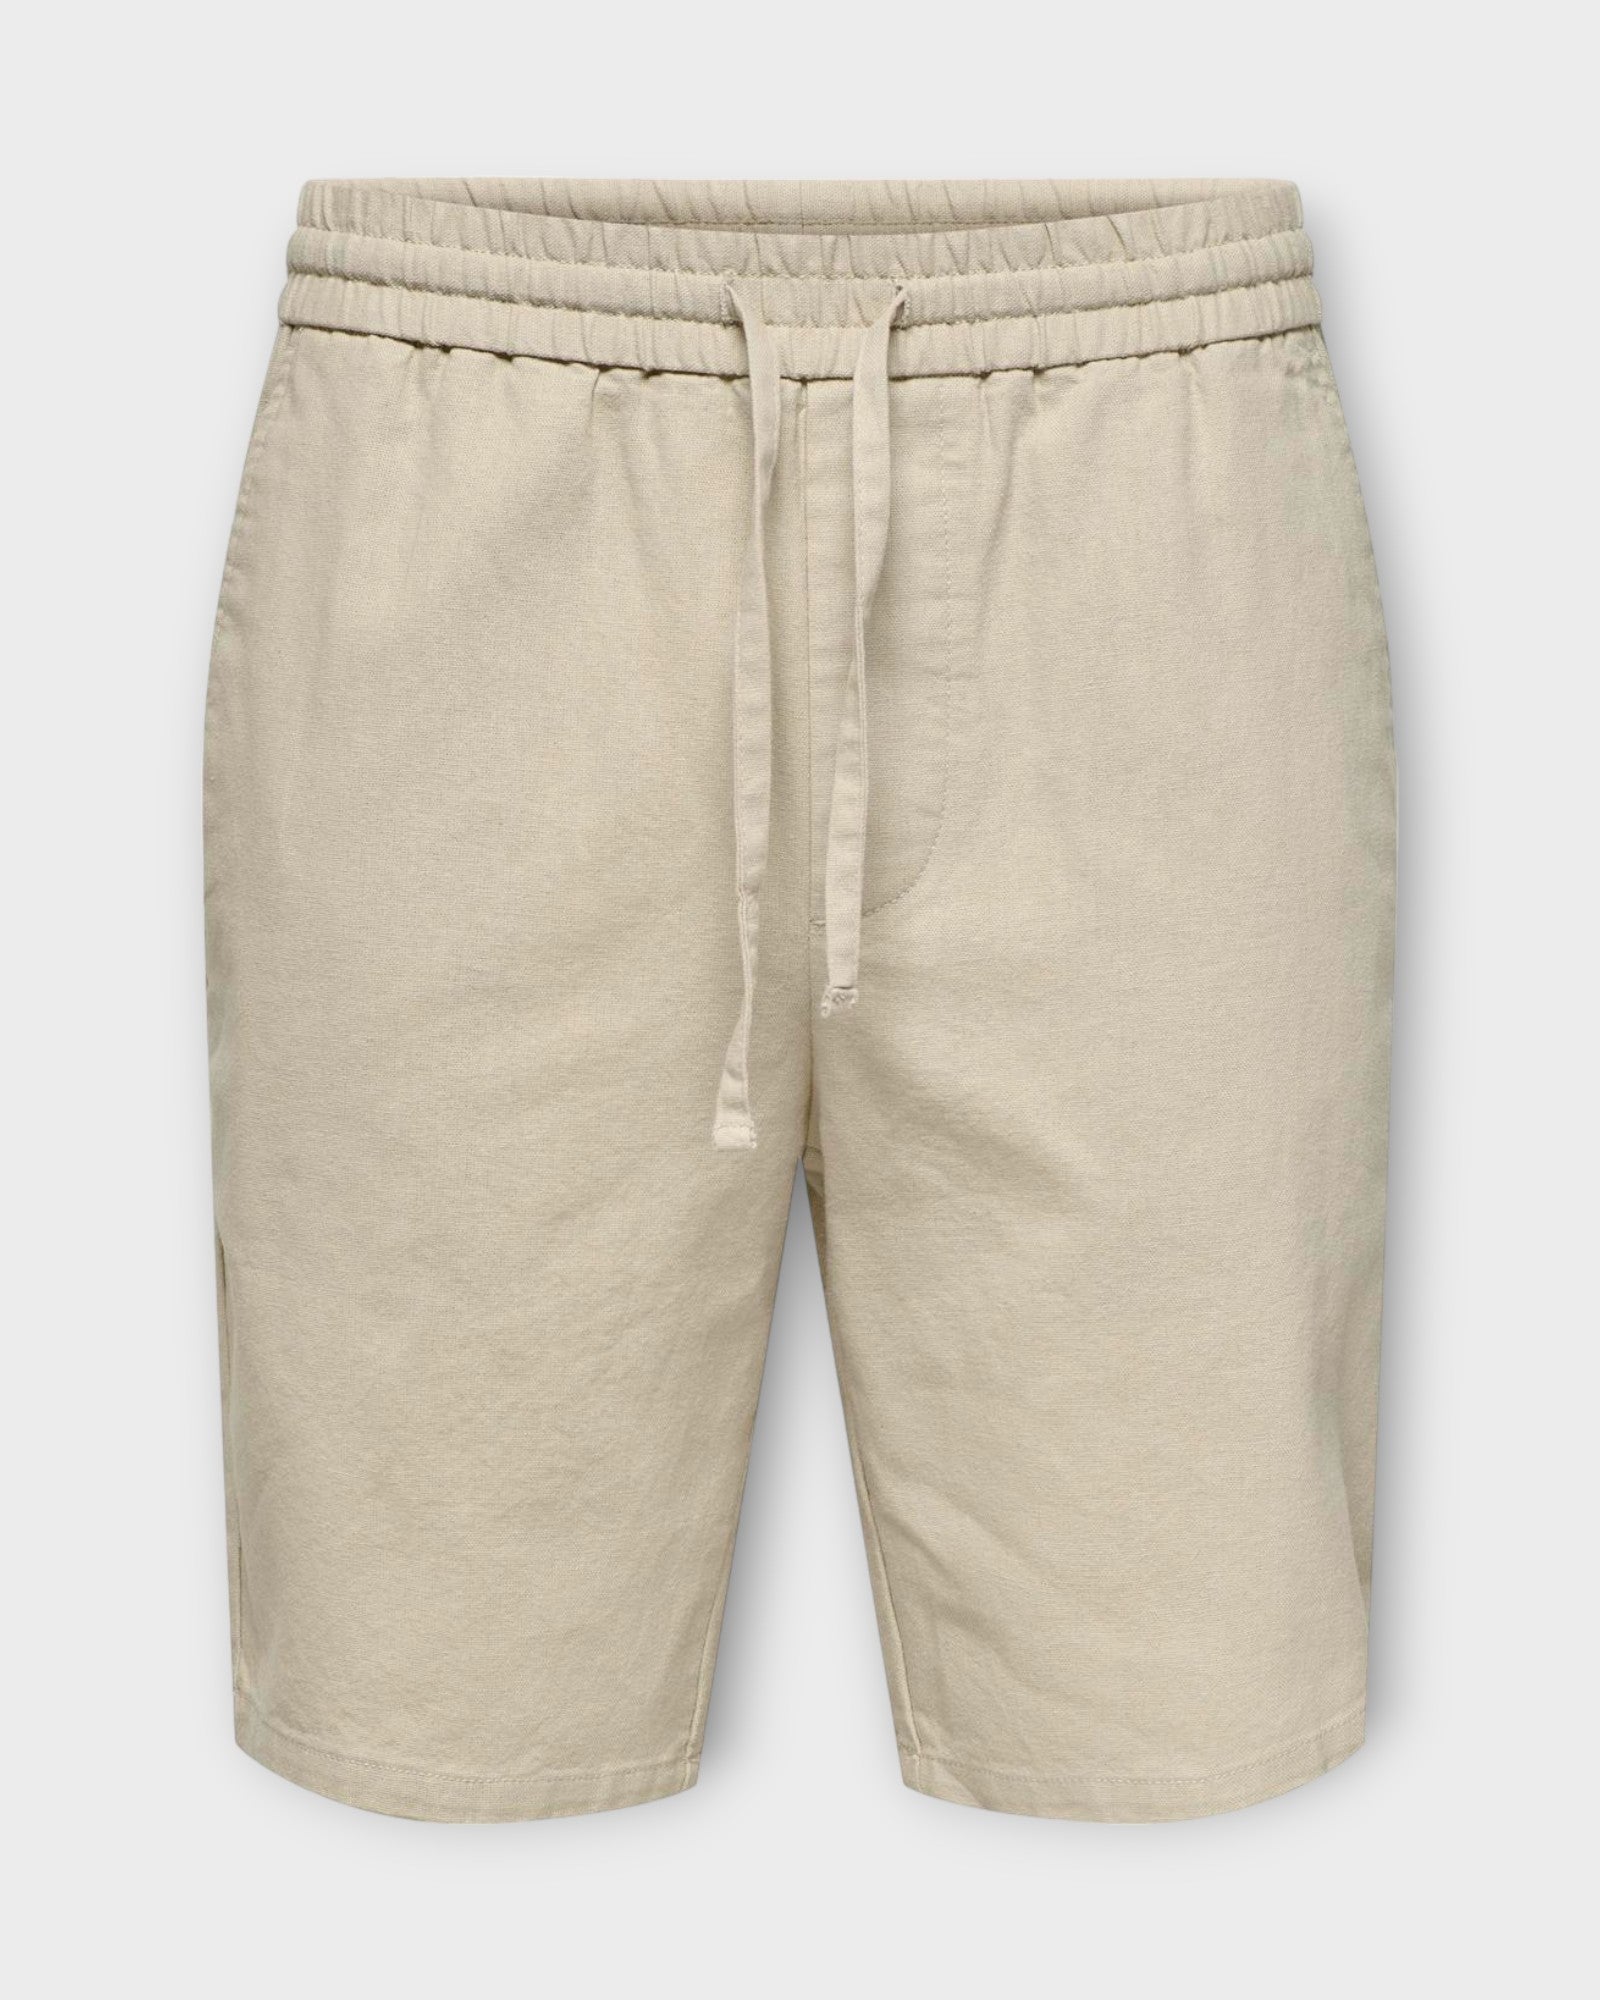 Linus 0007 Cot Lin Shorts Noos Silver Lining fra Only and Sons. Sandfarvet hør shorts til mænd. Her set forfra.